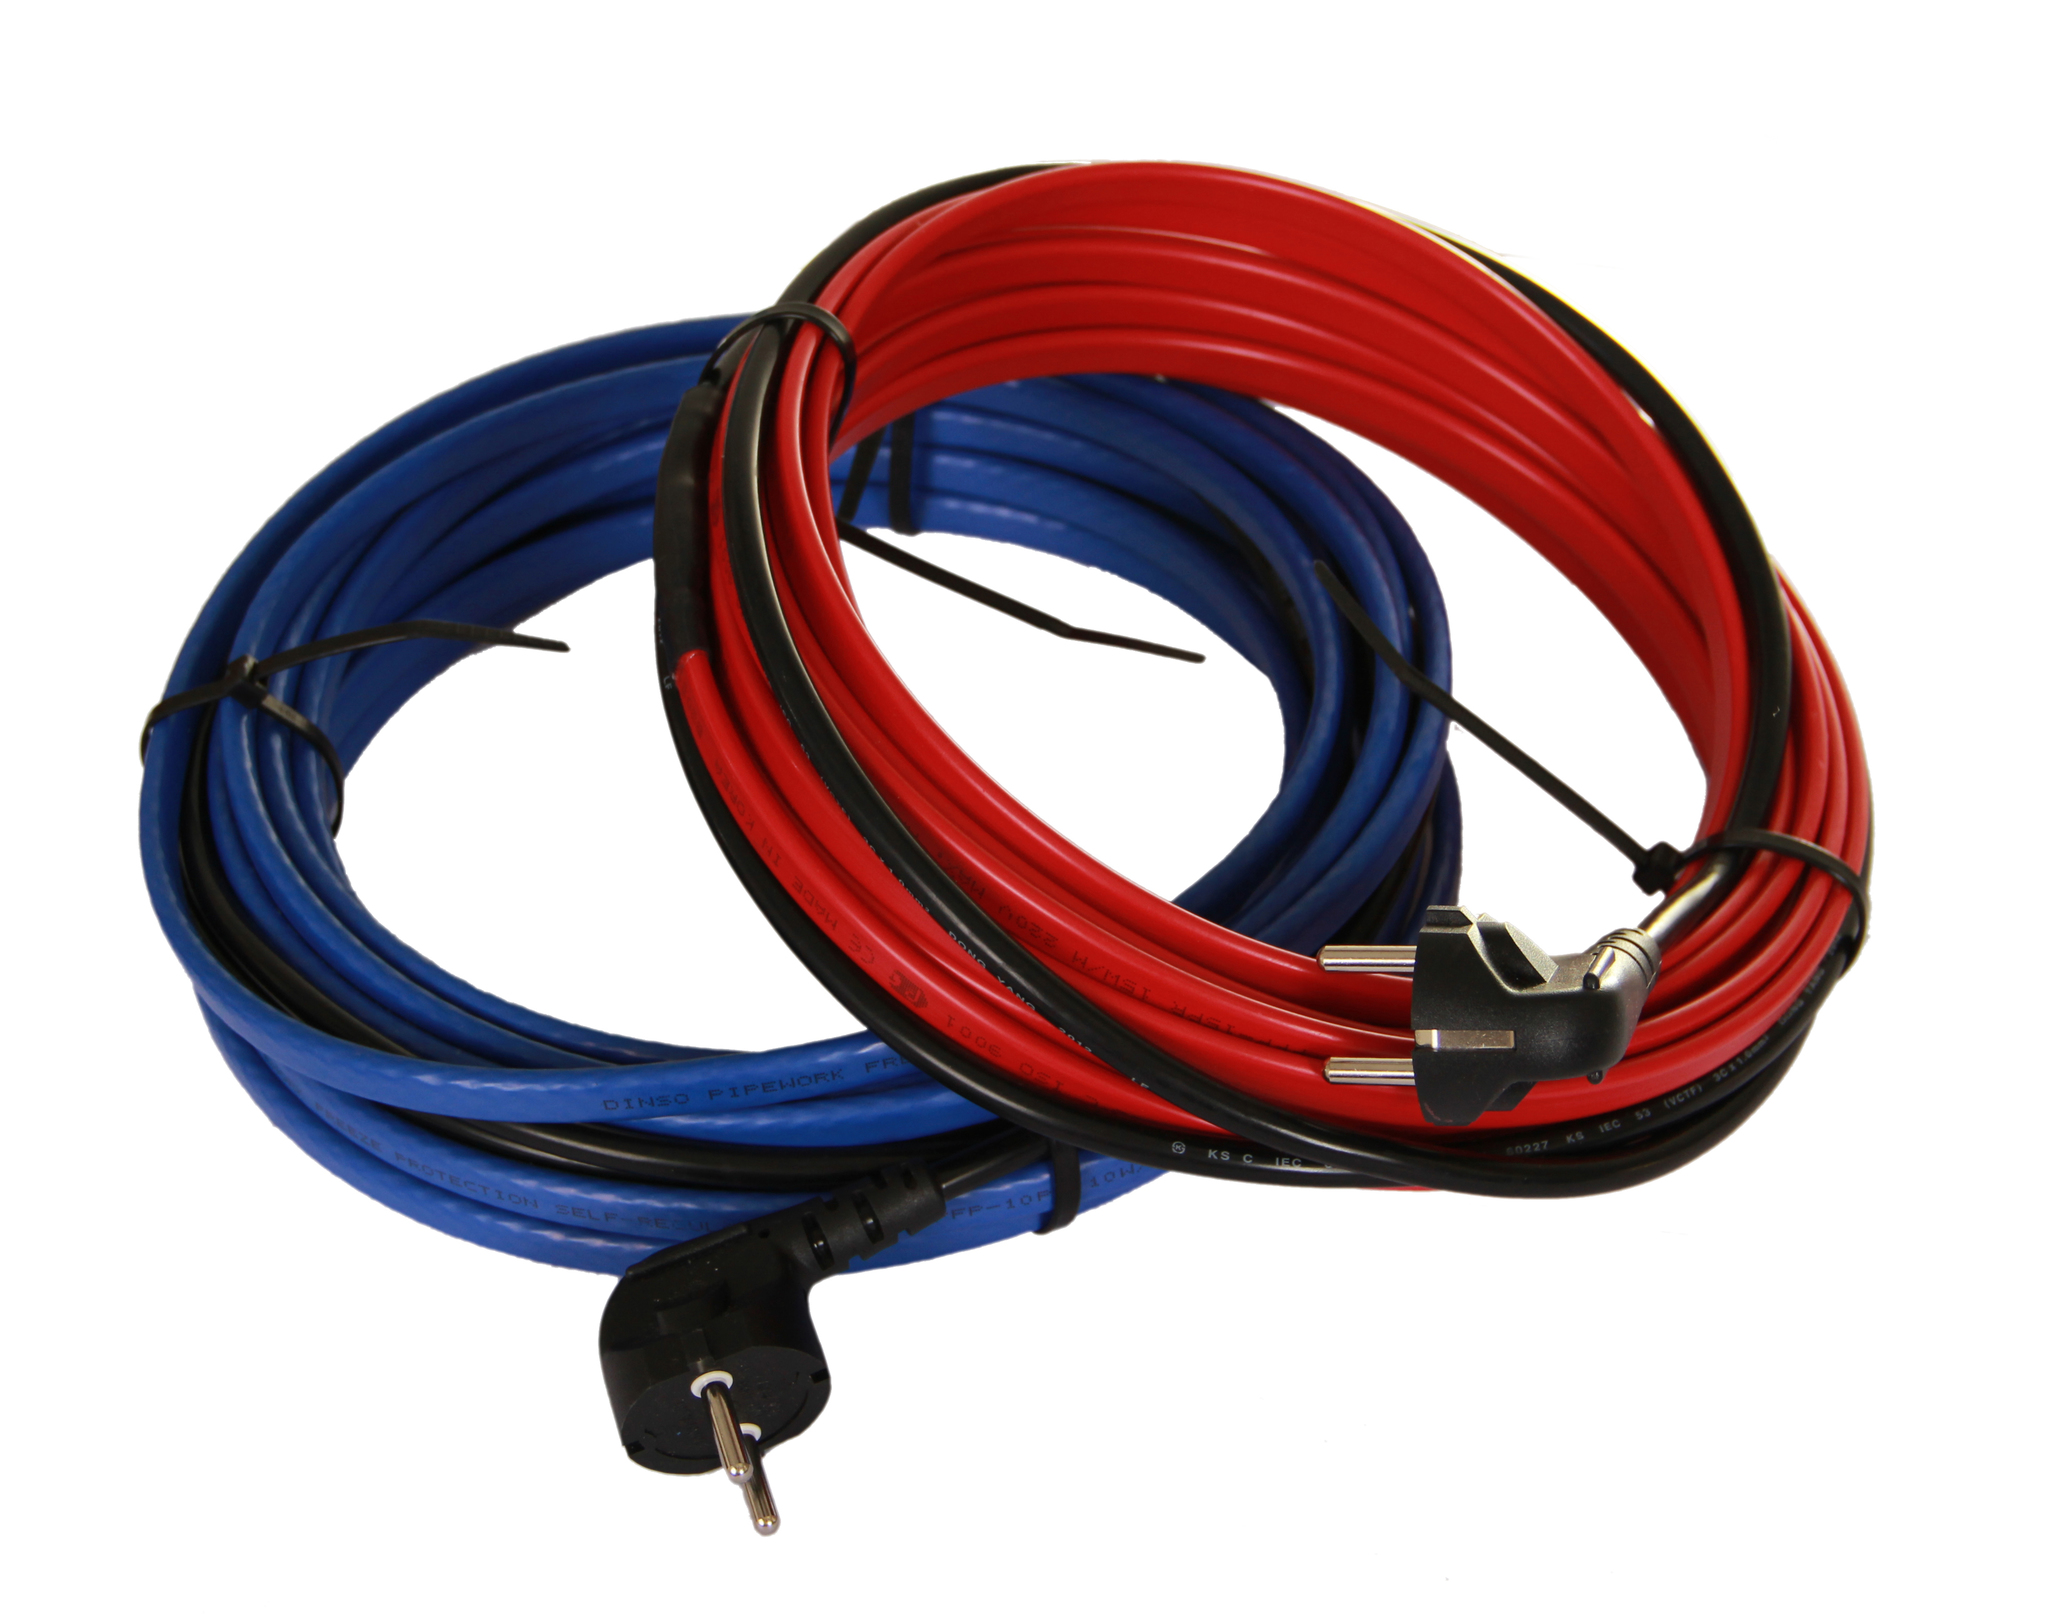 Купить обогревающий кабель. Кабель нагревательный для труб 23смбэ2-4. Греющий кабель Traceco (15вт/м ) Blue/Red. Греющий кабель 10вт/м. Греющий кабель hot-Cable SHR-20 360вт.